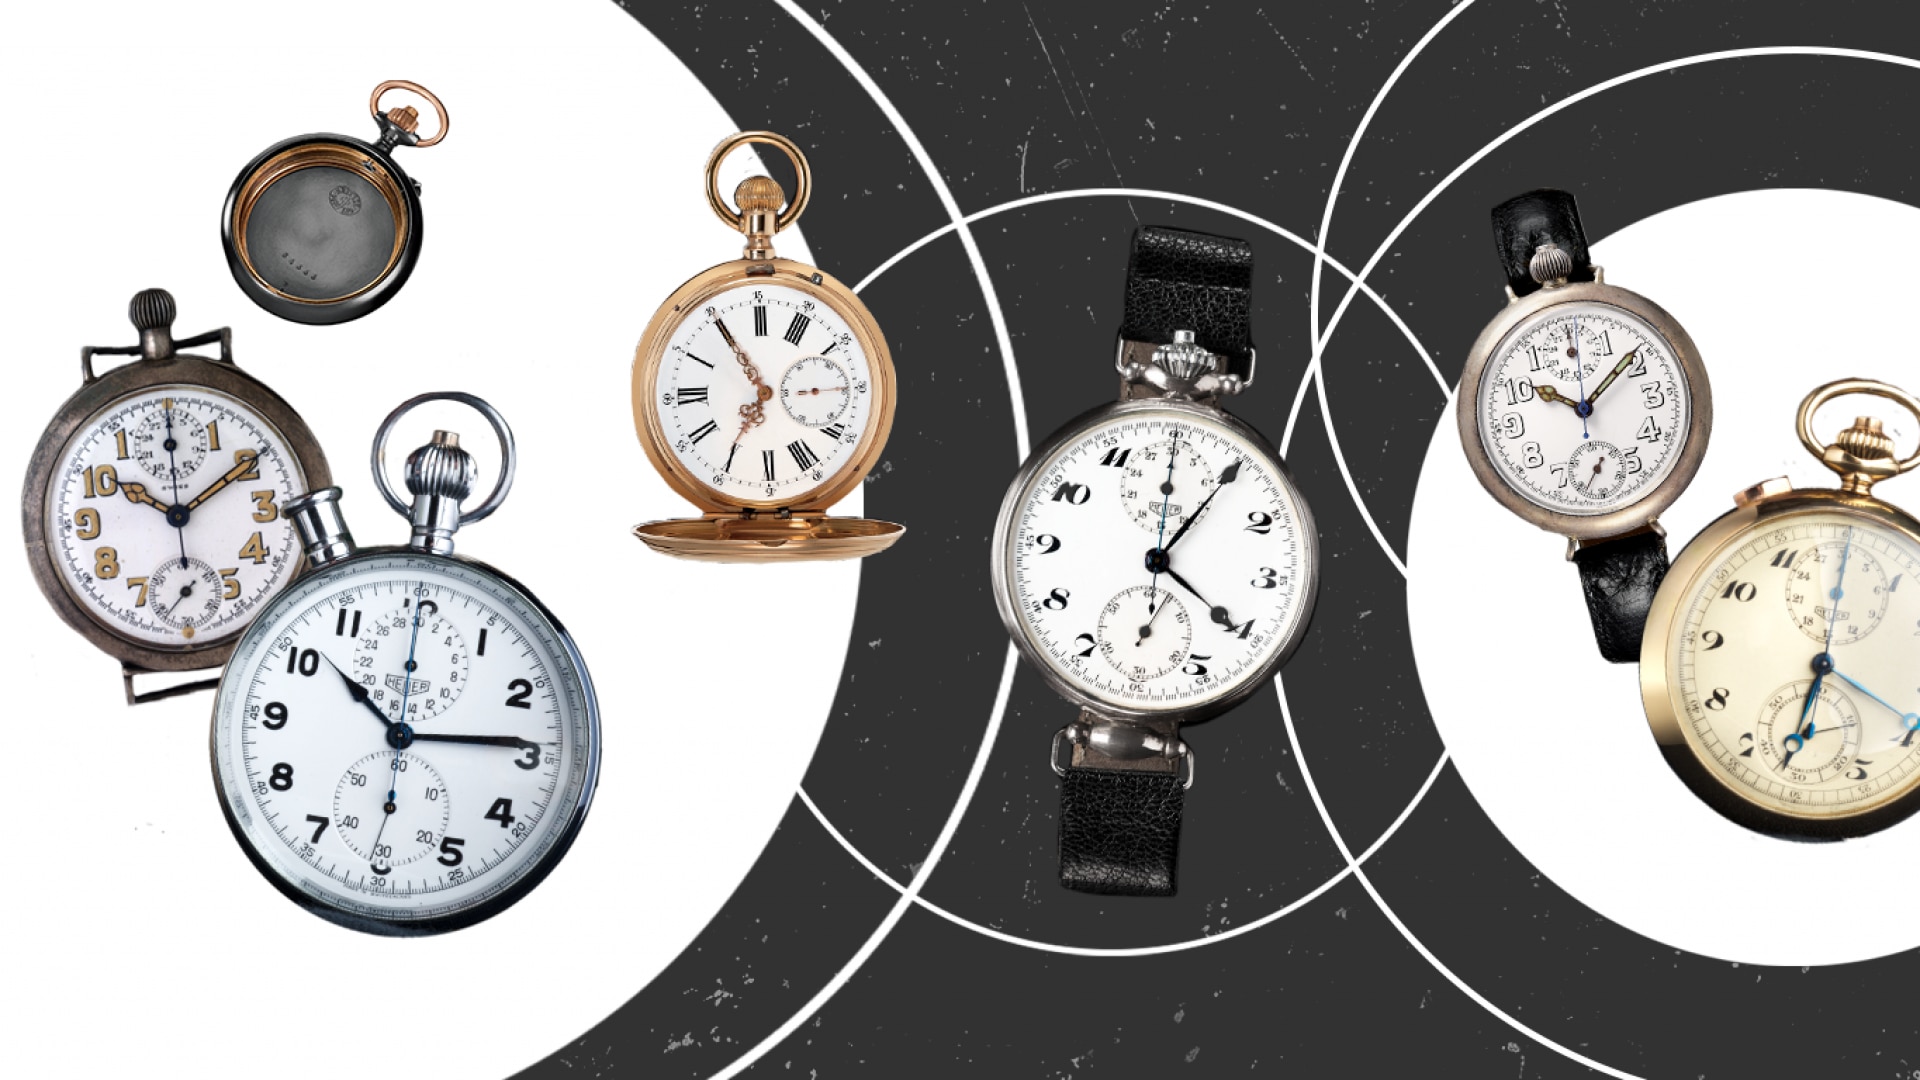 La del reloj de pulsera: ¿Por dejaron de utilizar los relojes de bolsillo? - Segunda parte| TAG Heuer Official Magazine